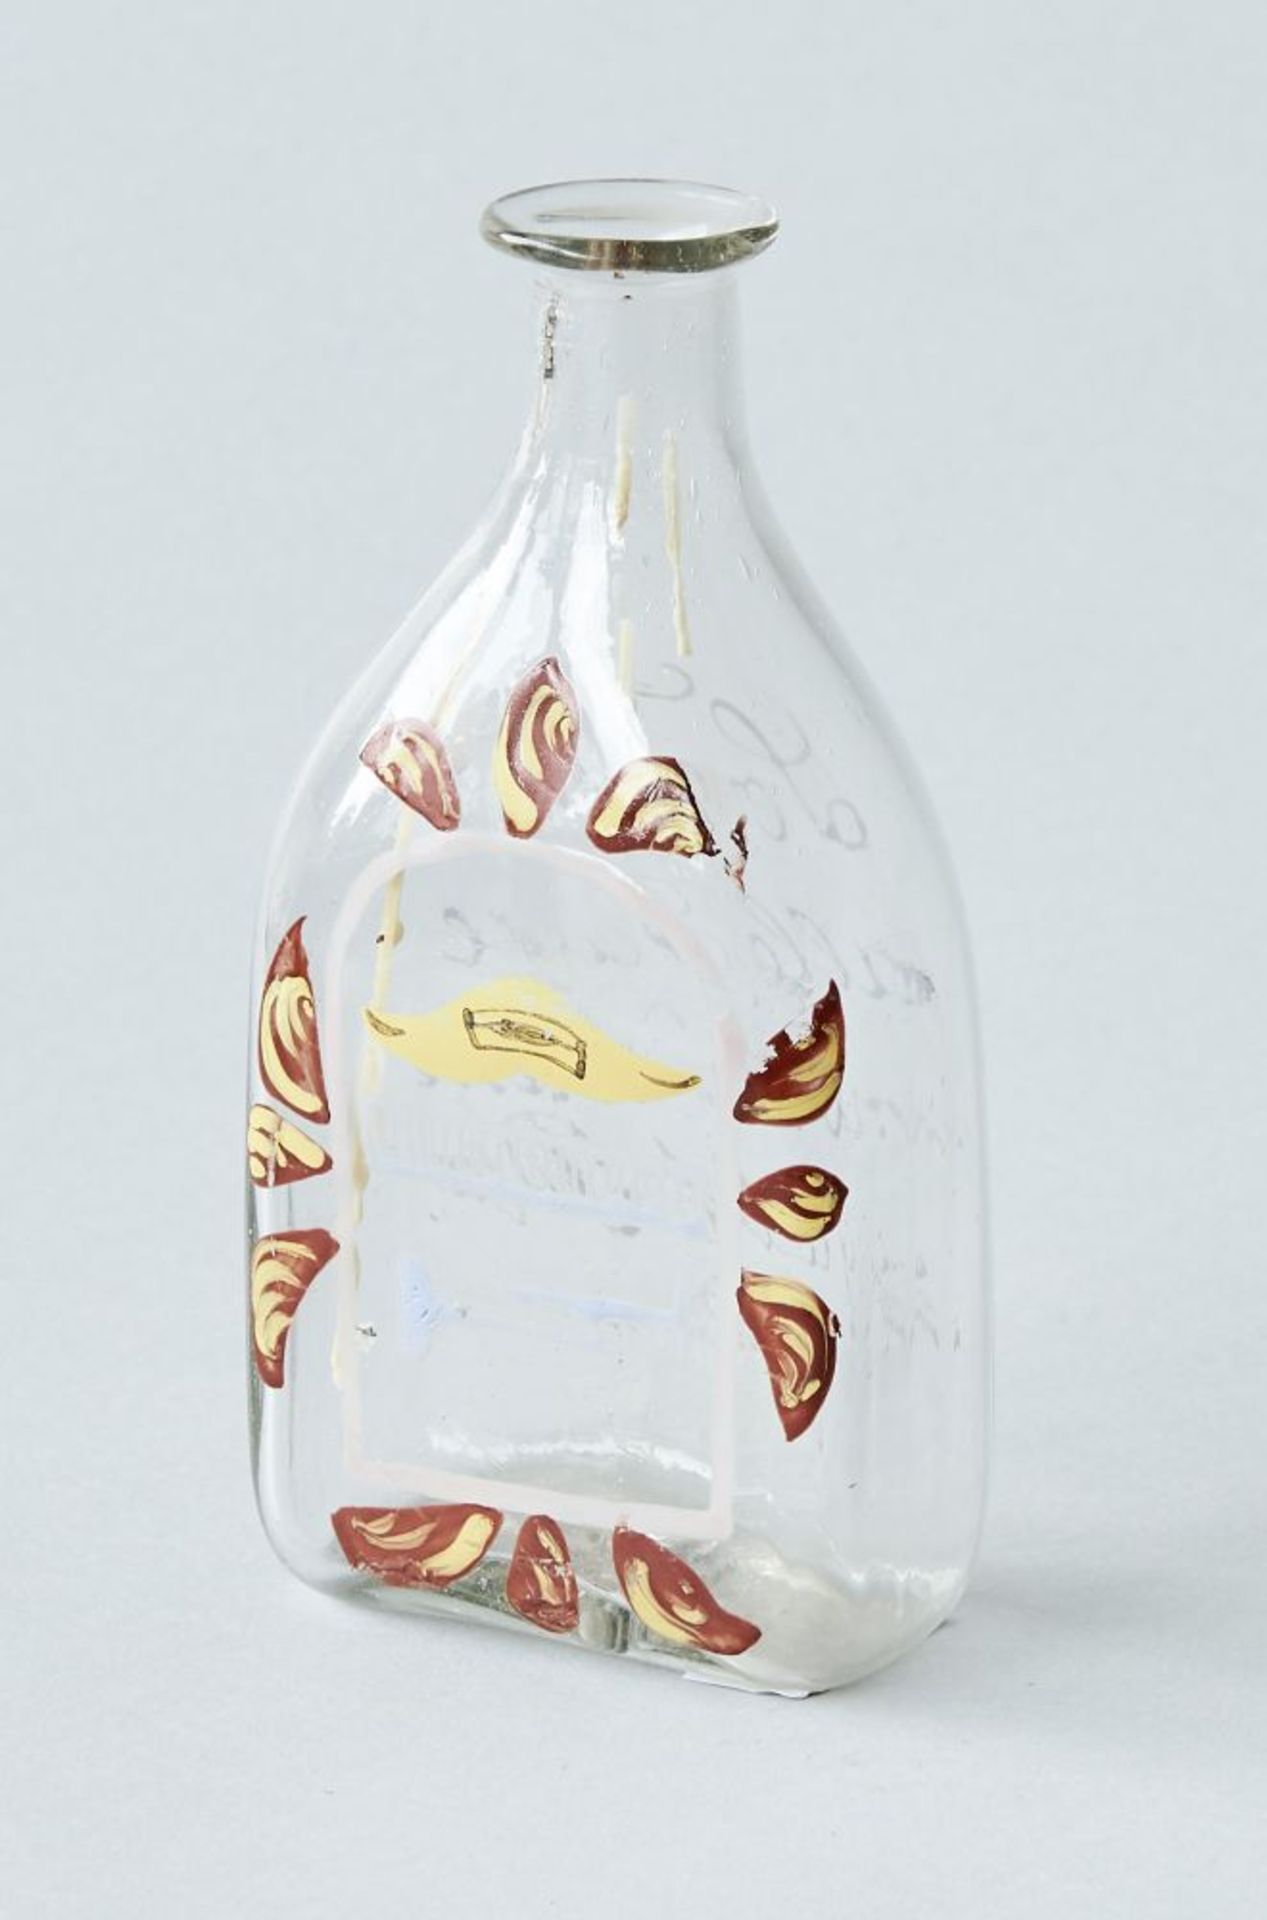 6 Glasobjekte, süddeutschGlasflaschen verschiedener Größen mit Abriss, süddeutsch. Höhe 10-15 cm - Bild 2 aus 6